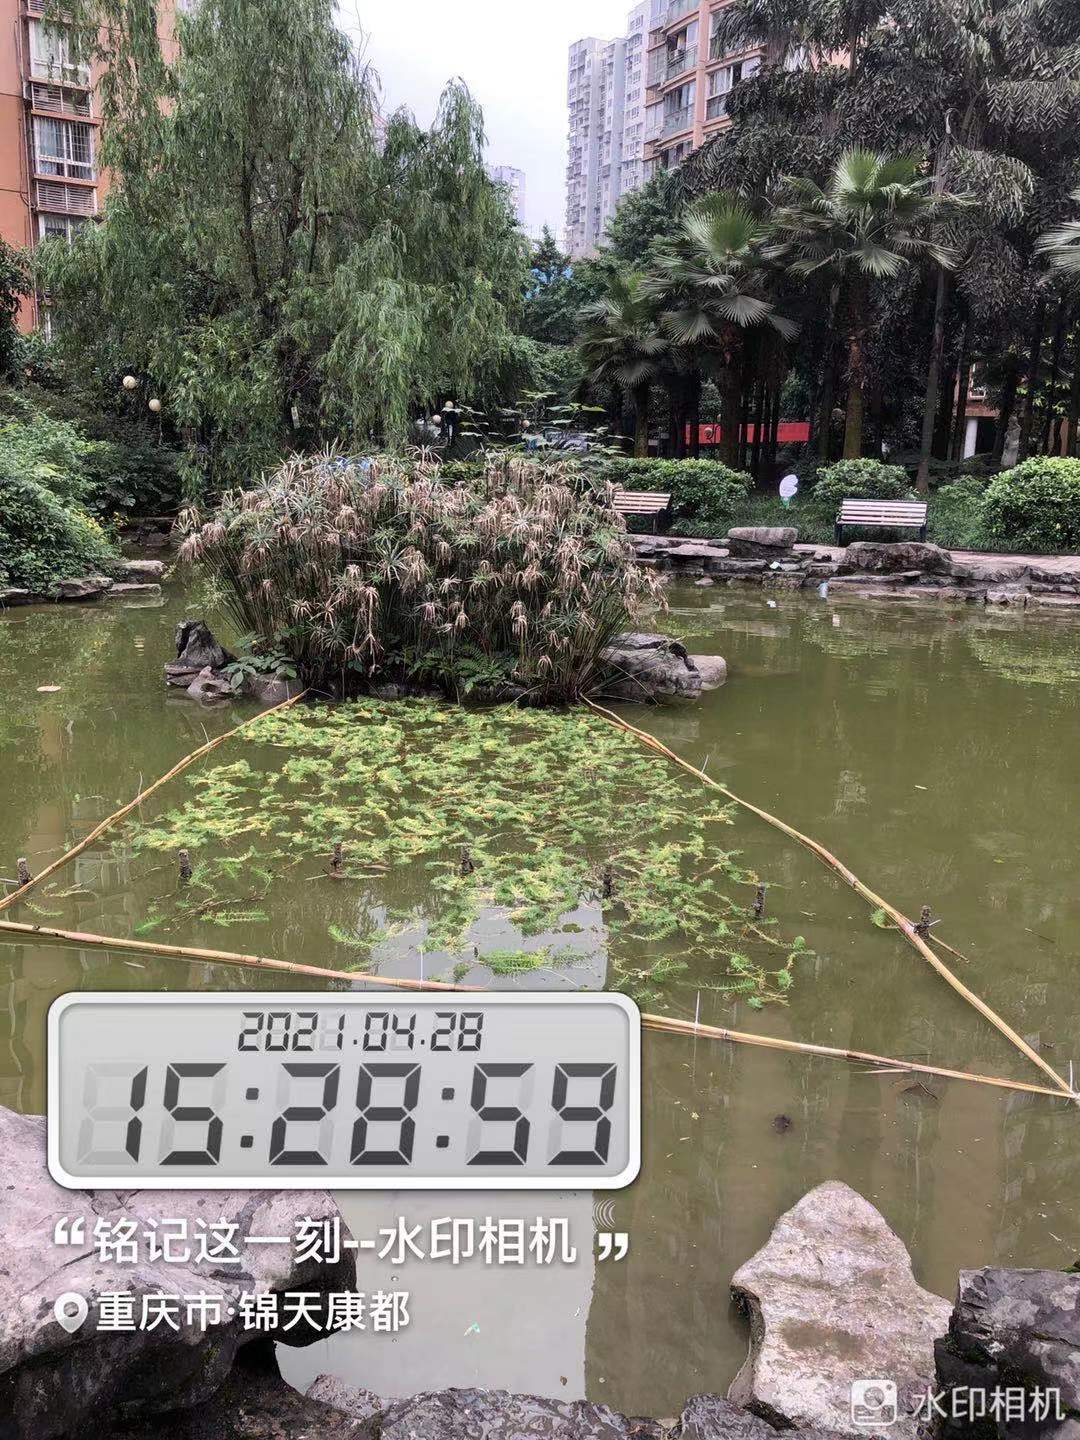 重庆市锦天物业管理有限公司 环境照片活动图片